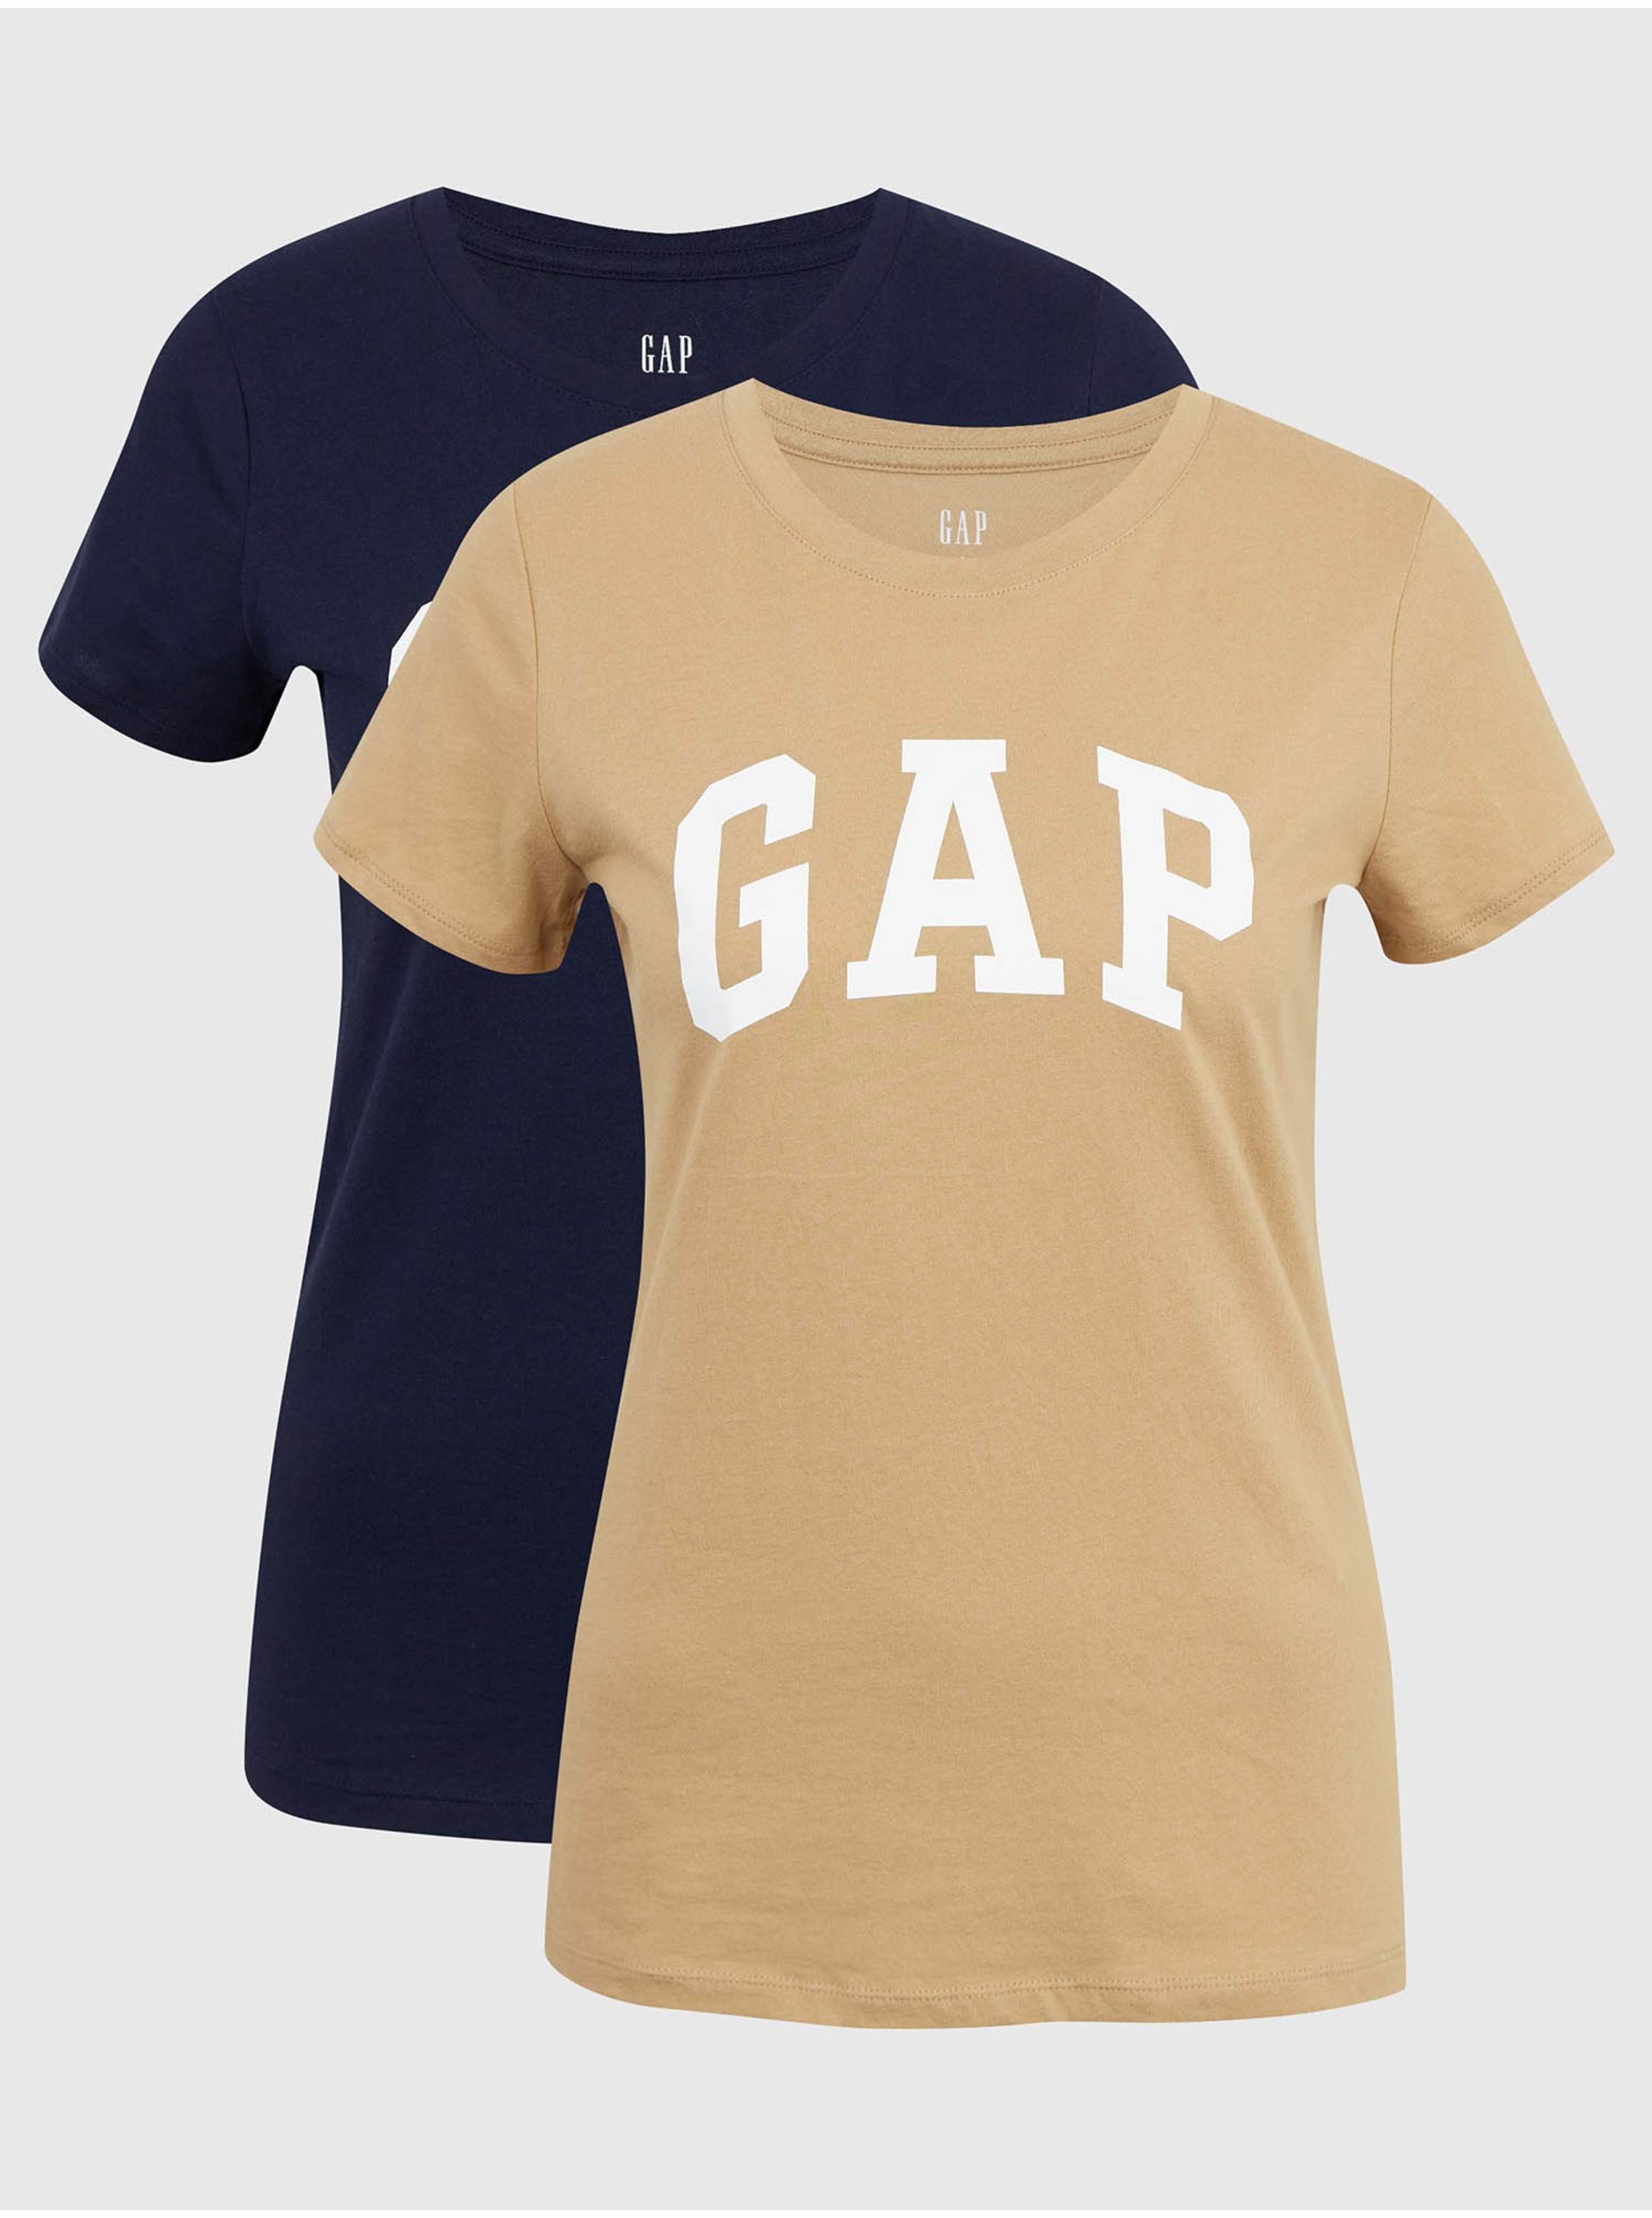 Levně Béžové dámské tričko GAP Logo franchise classic t-shirt, 2ks